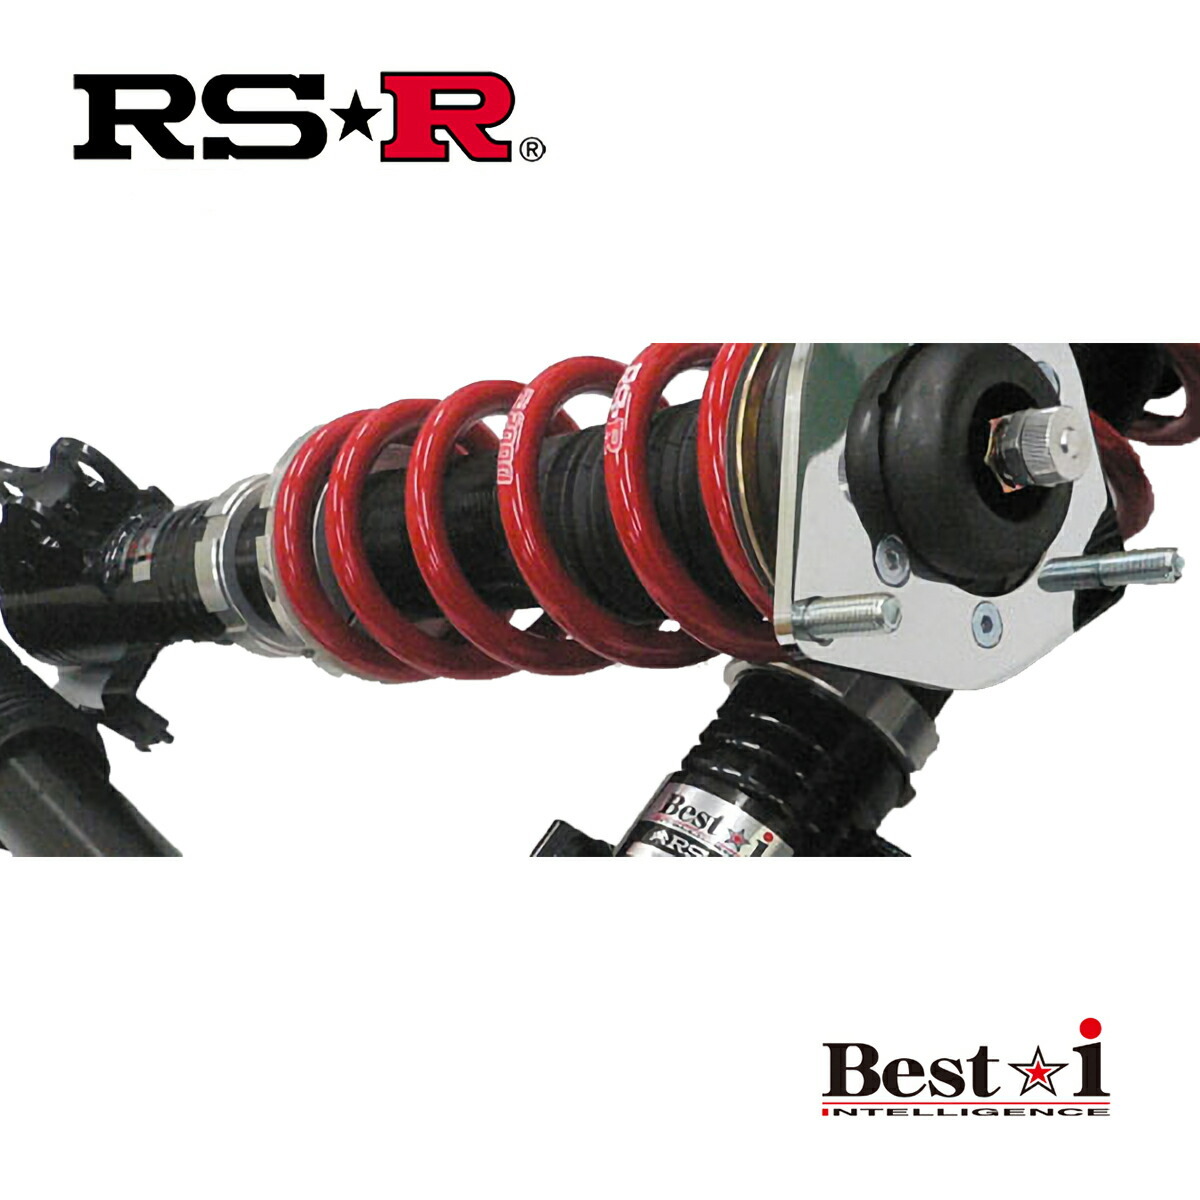 RSR レクサス RC300h AVC10 車高調 リア車高調整: ネジ式 LIT103M RS-R Best-i ベストi_画像1